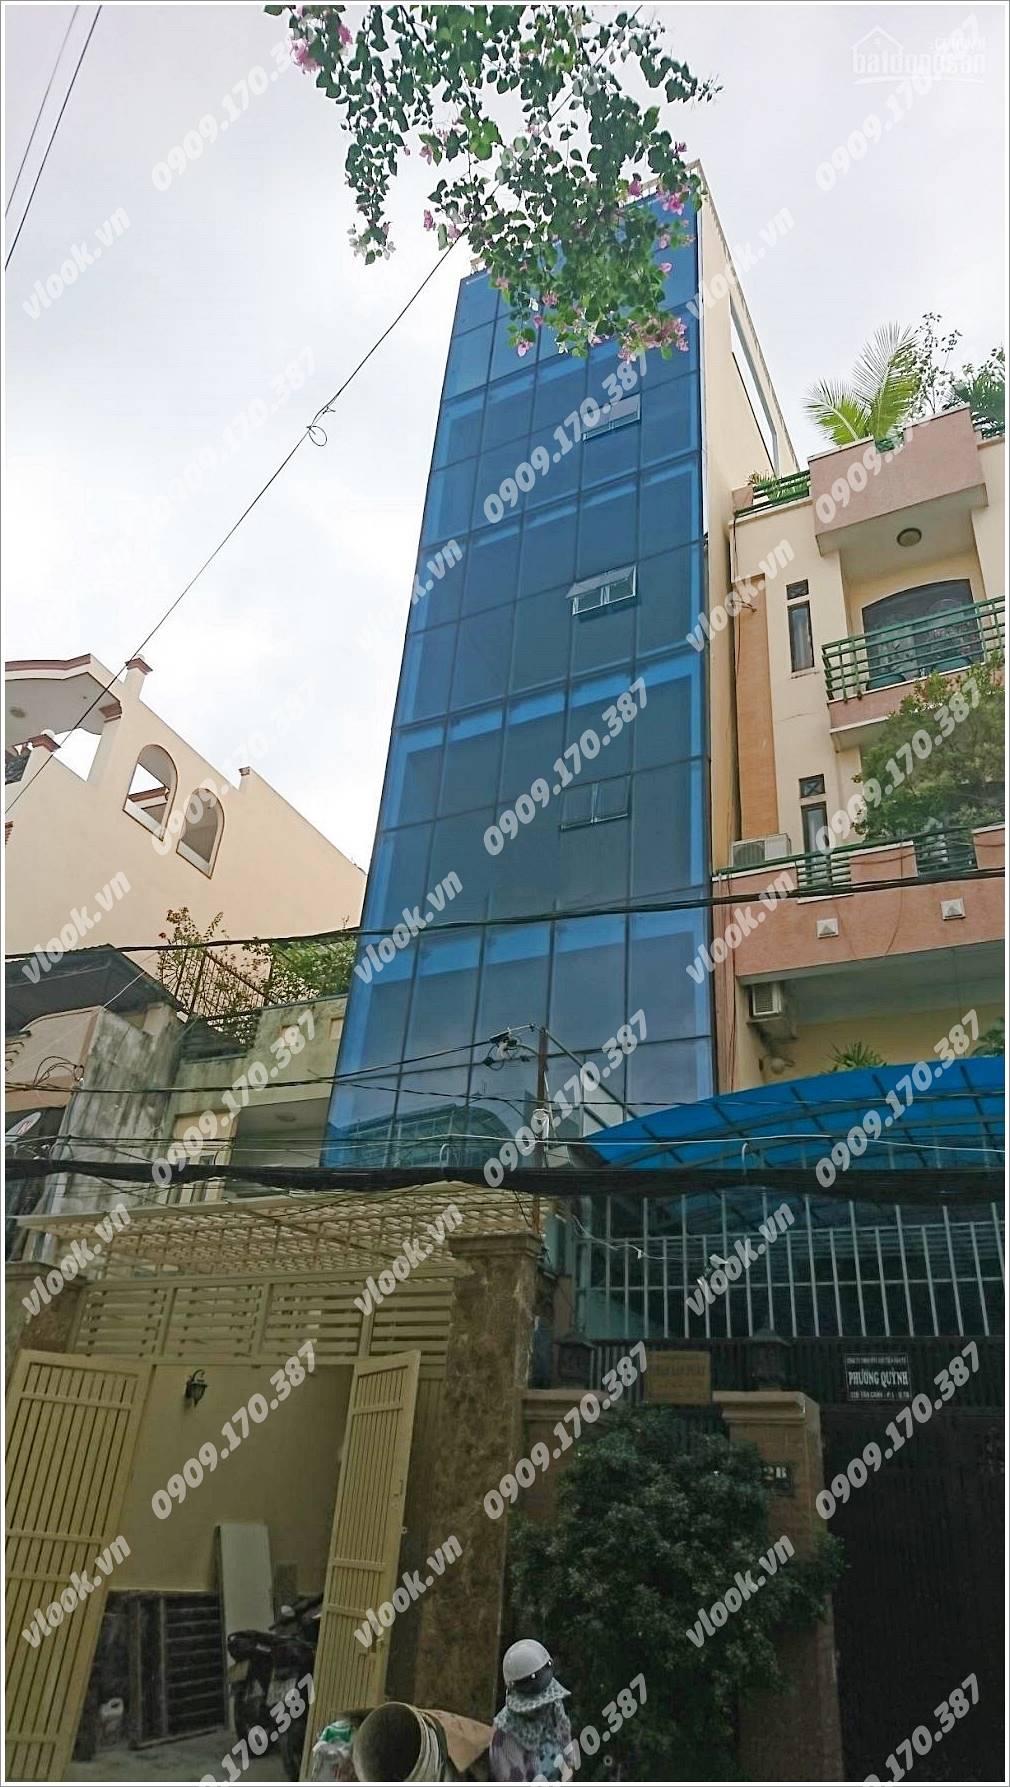 Cao ốc cho thuê văn phòng K&D Building, Tân Cảnh, Quận Tân Bình - vlook.vn